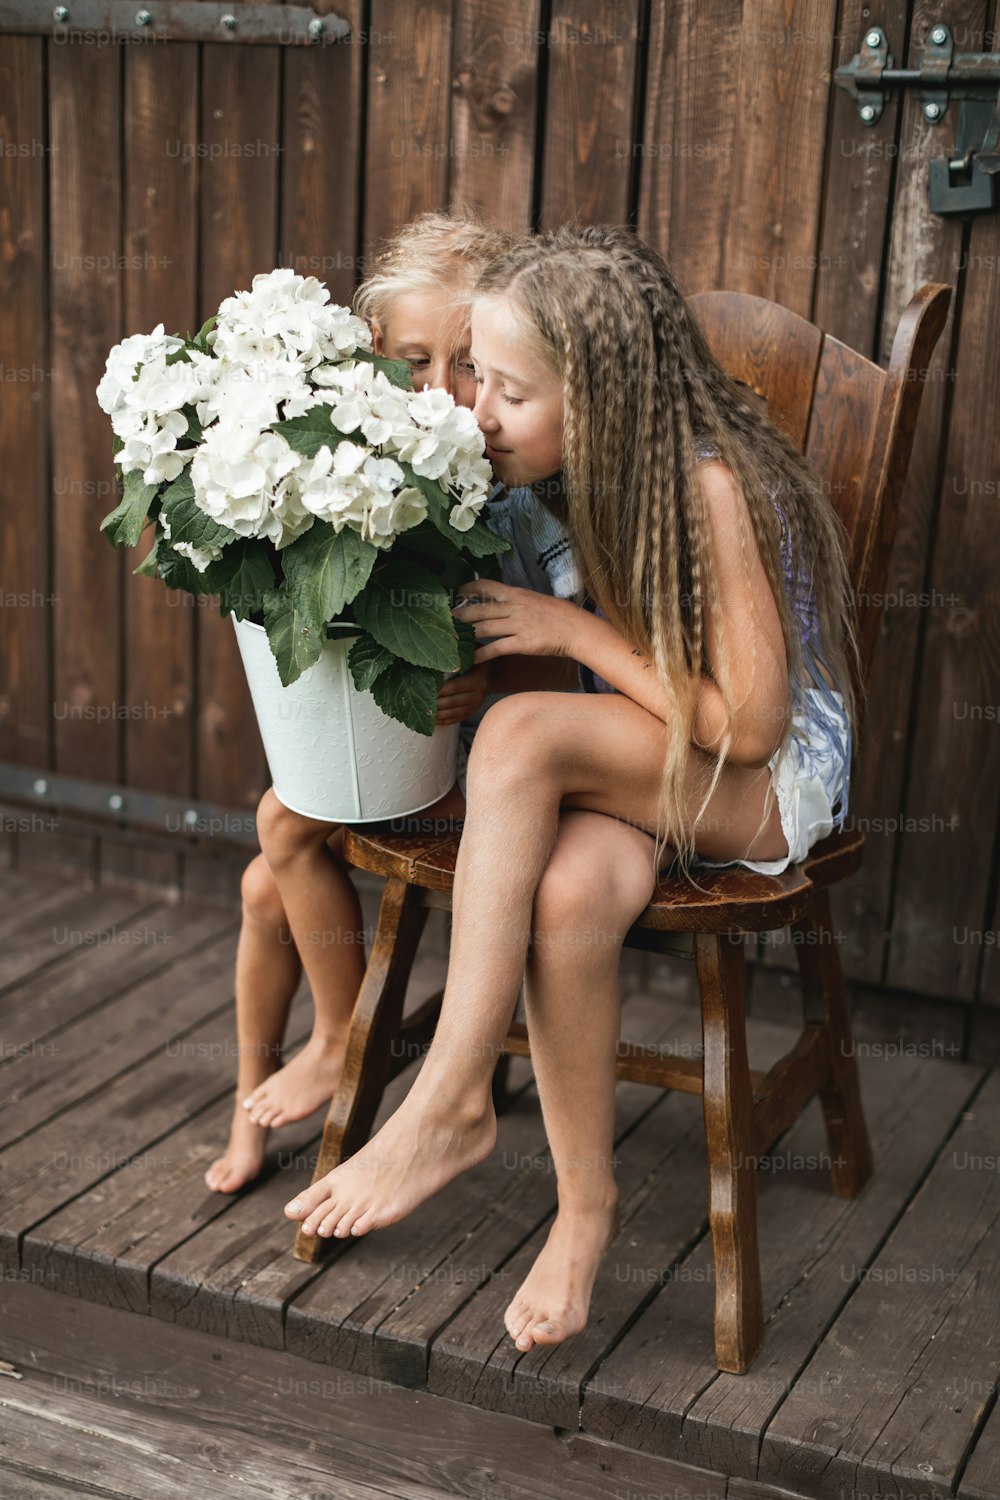 Crianças e flores, verão, campo e diversão. Férias de verão. Duas meninas bonitas sentadas na cadeira em frente ao celeiro de madeira e cheirando flores de hortênsia em um grande balde branco.